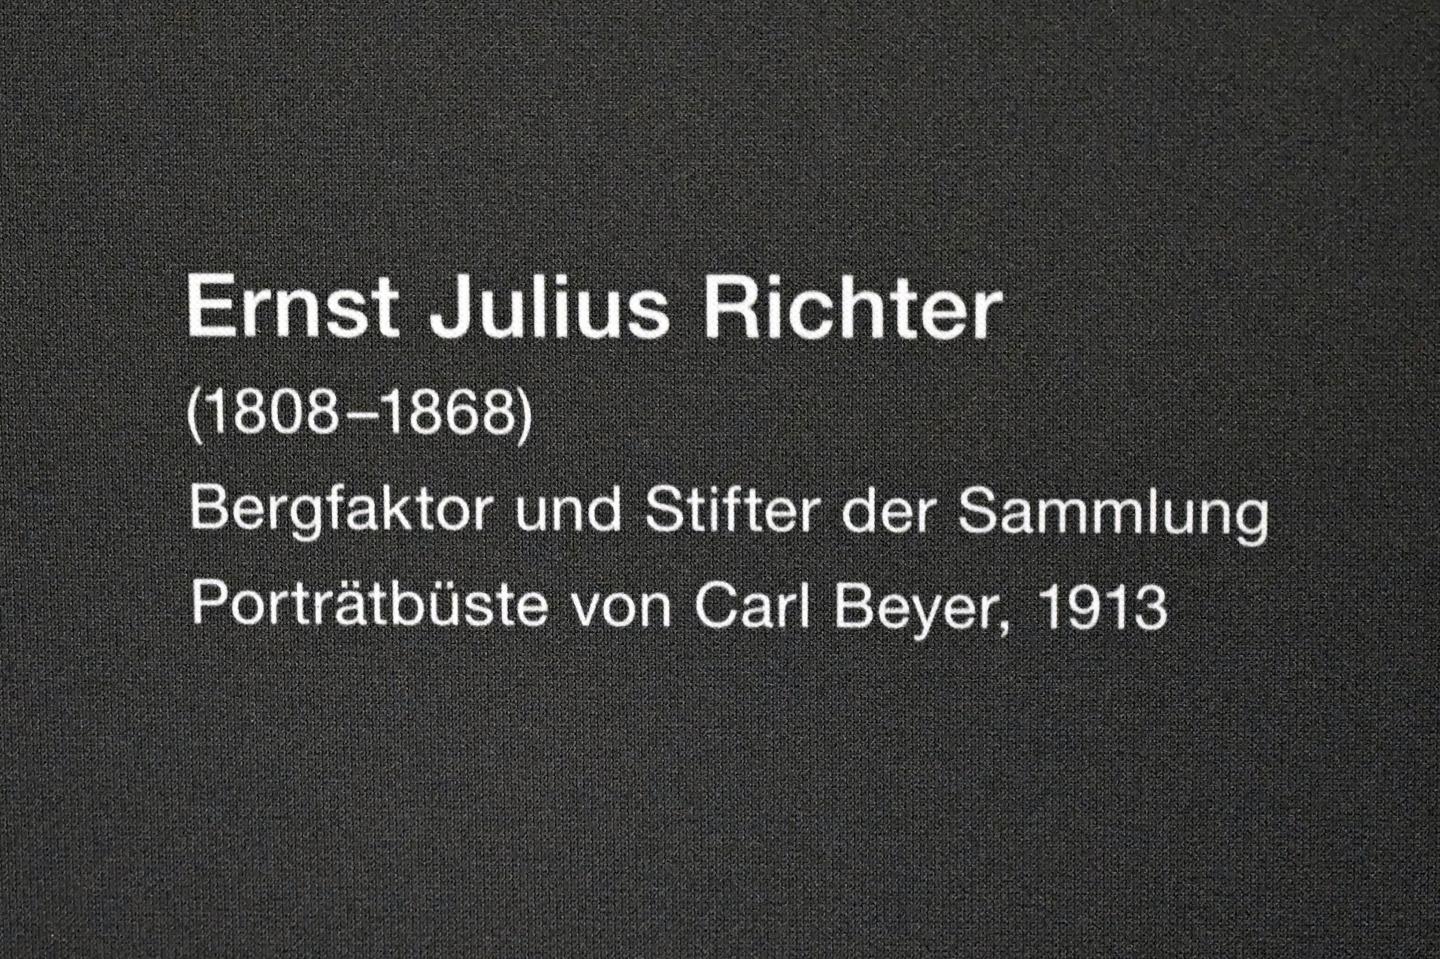 Carl Beyer (1913), Ernst Julius Richter (1808-1868), Zwickau, Kunstsammlungen, Schätze der Erde, 1913, Bild 4/4